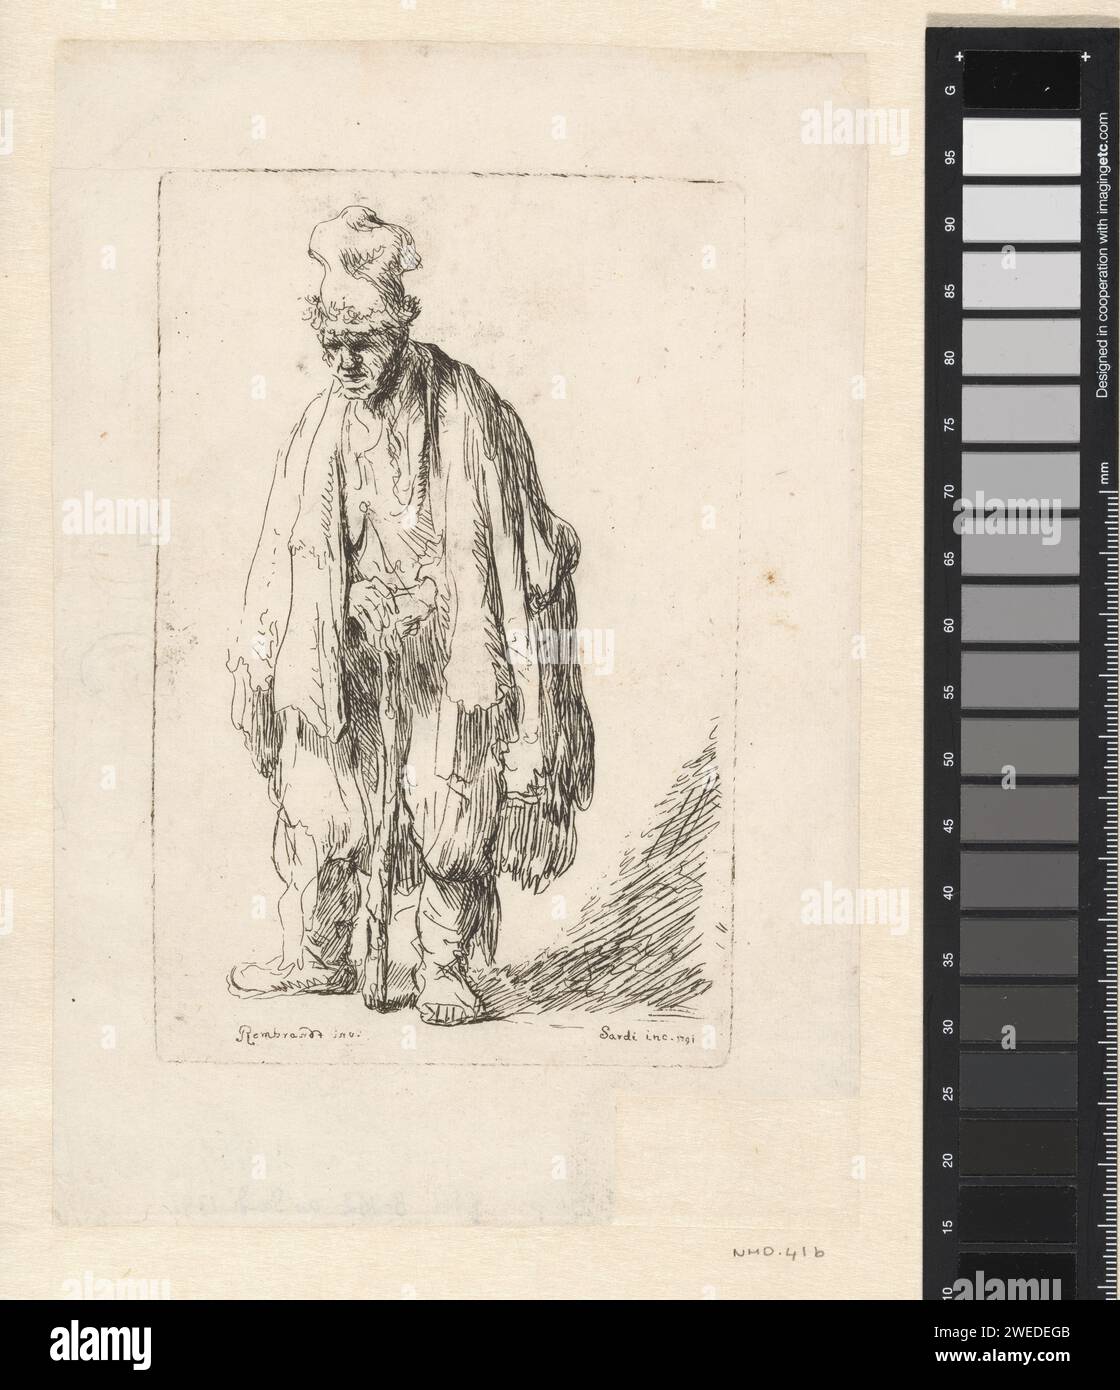 Bettler in hoher Kappe, stehend und auf einem Stock gestützt, Giuseppe Sardi, nach Rembrandt van Rijn, 1791 Druck Japanpapier (handgefertigtes Papier), Ätzkopfbekleidung: Mütze (+ Herrenkleidung). Bettler Stockfoto